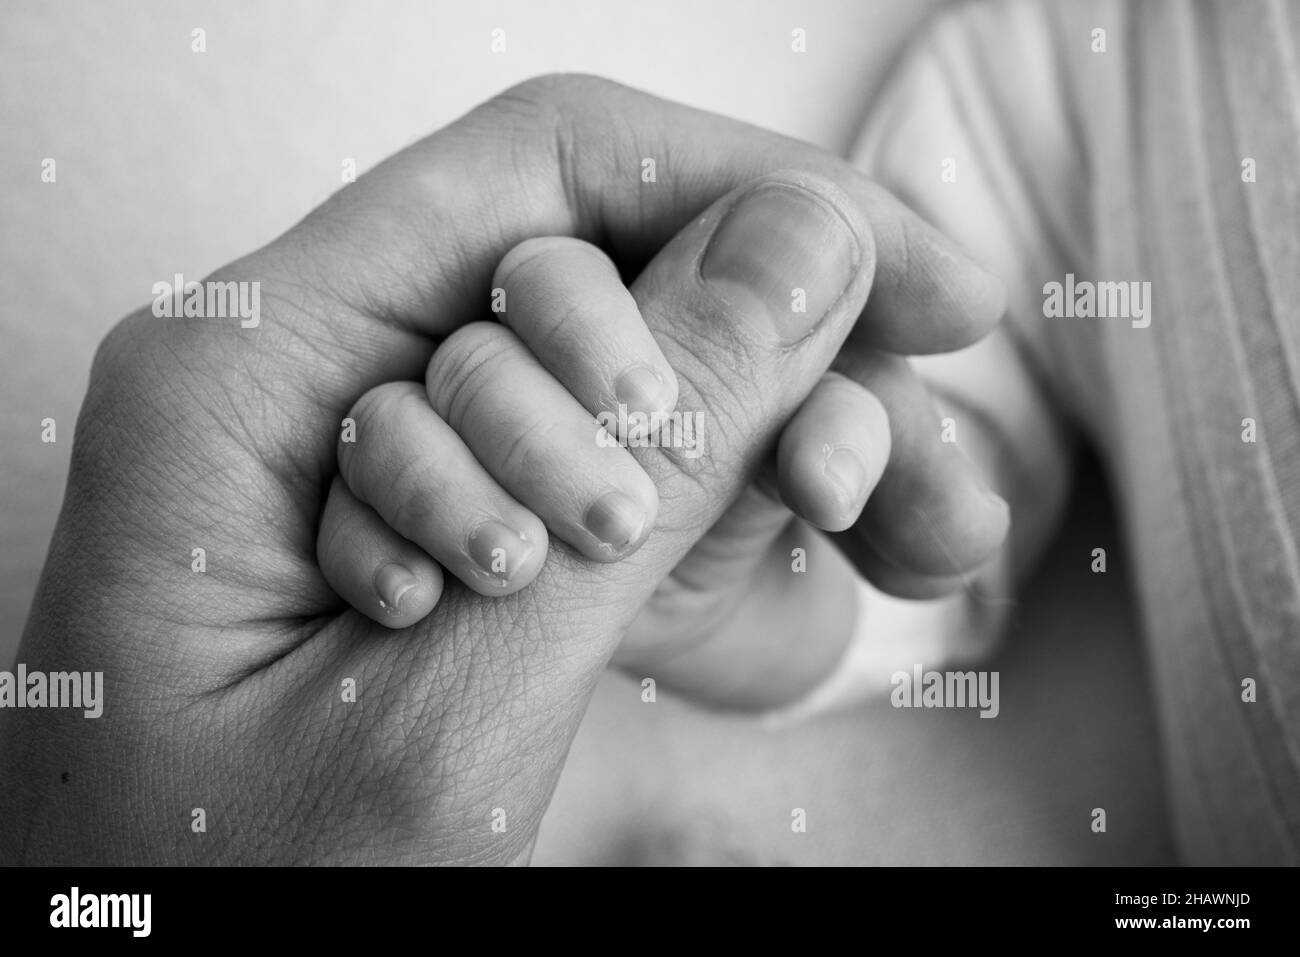 Il neonato ha una presa salda sul dito del genitore dopo la nascita. Foto Stock